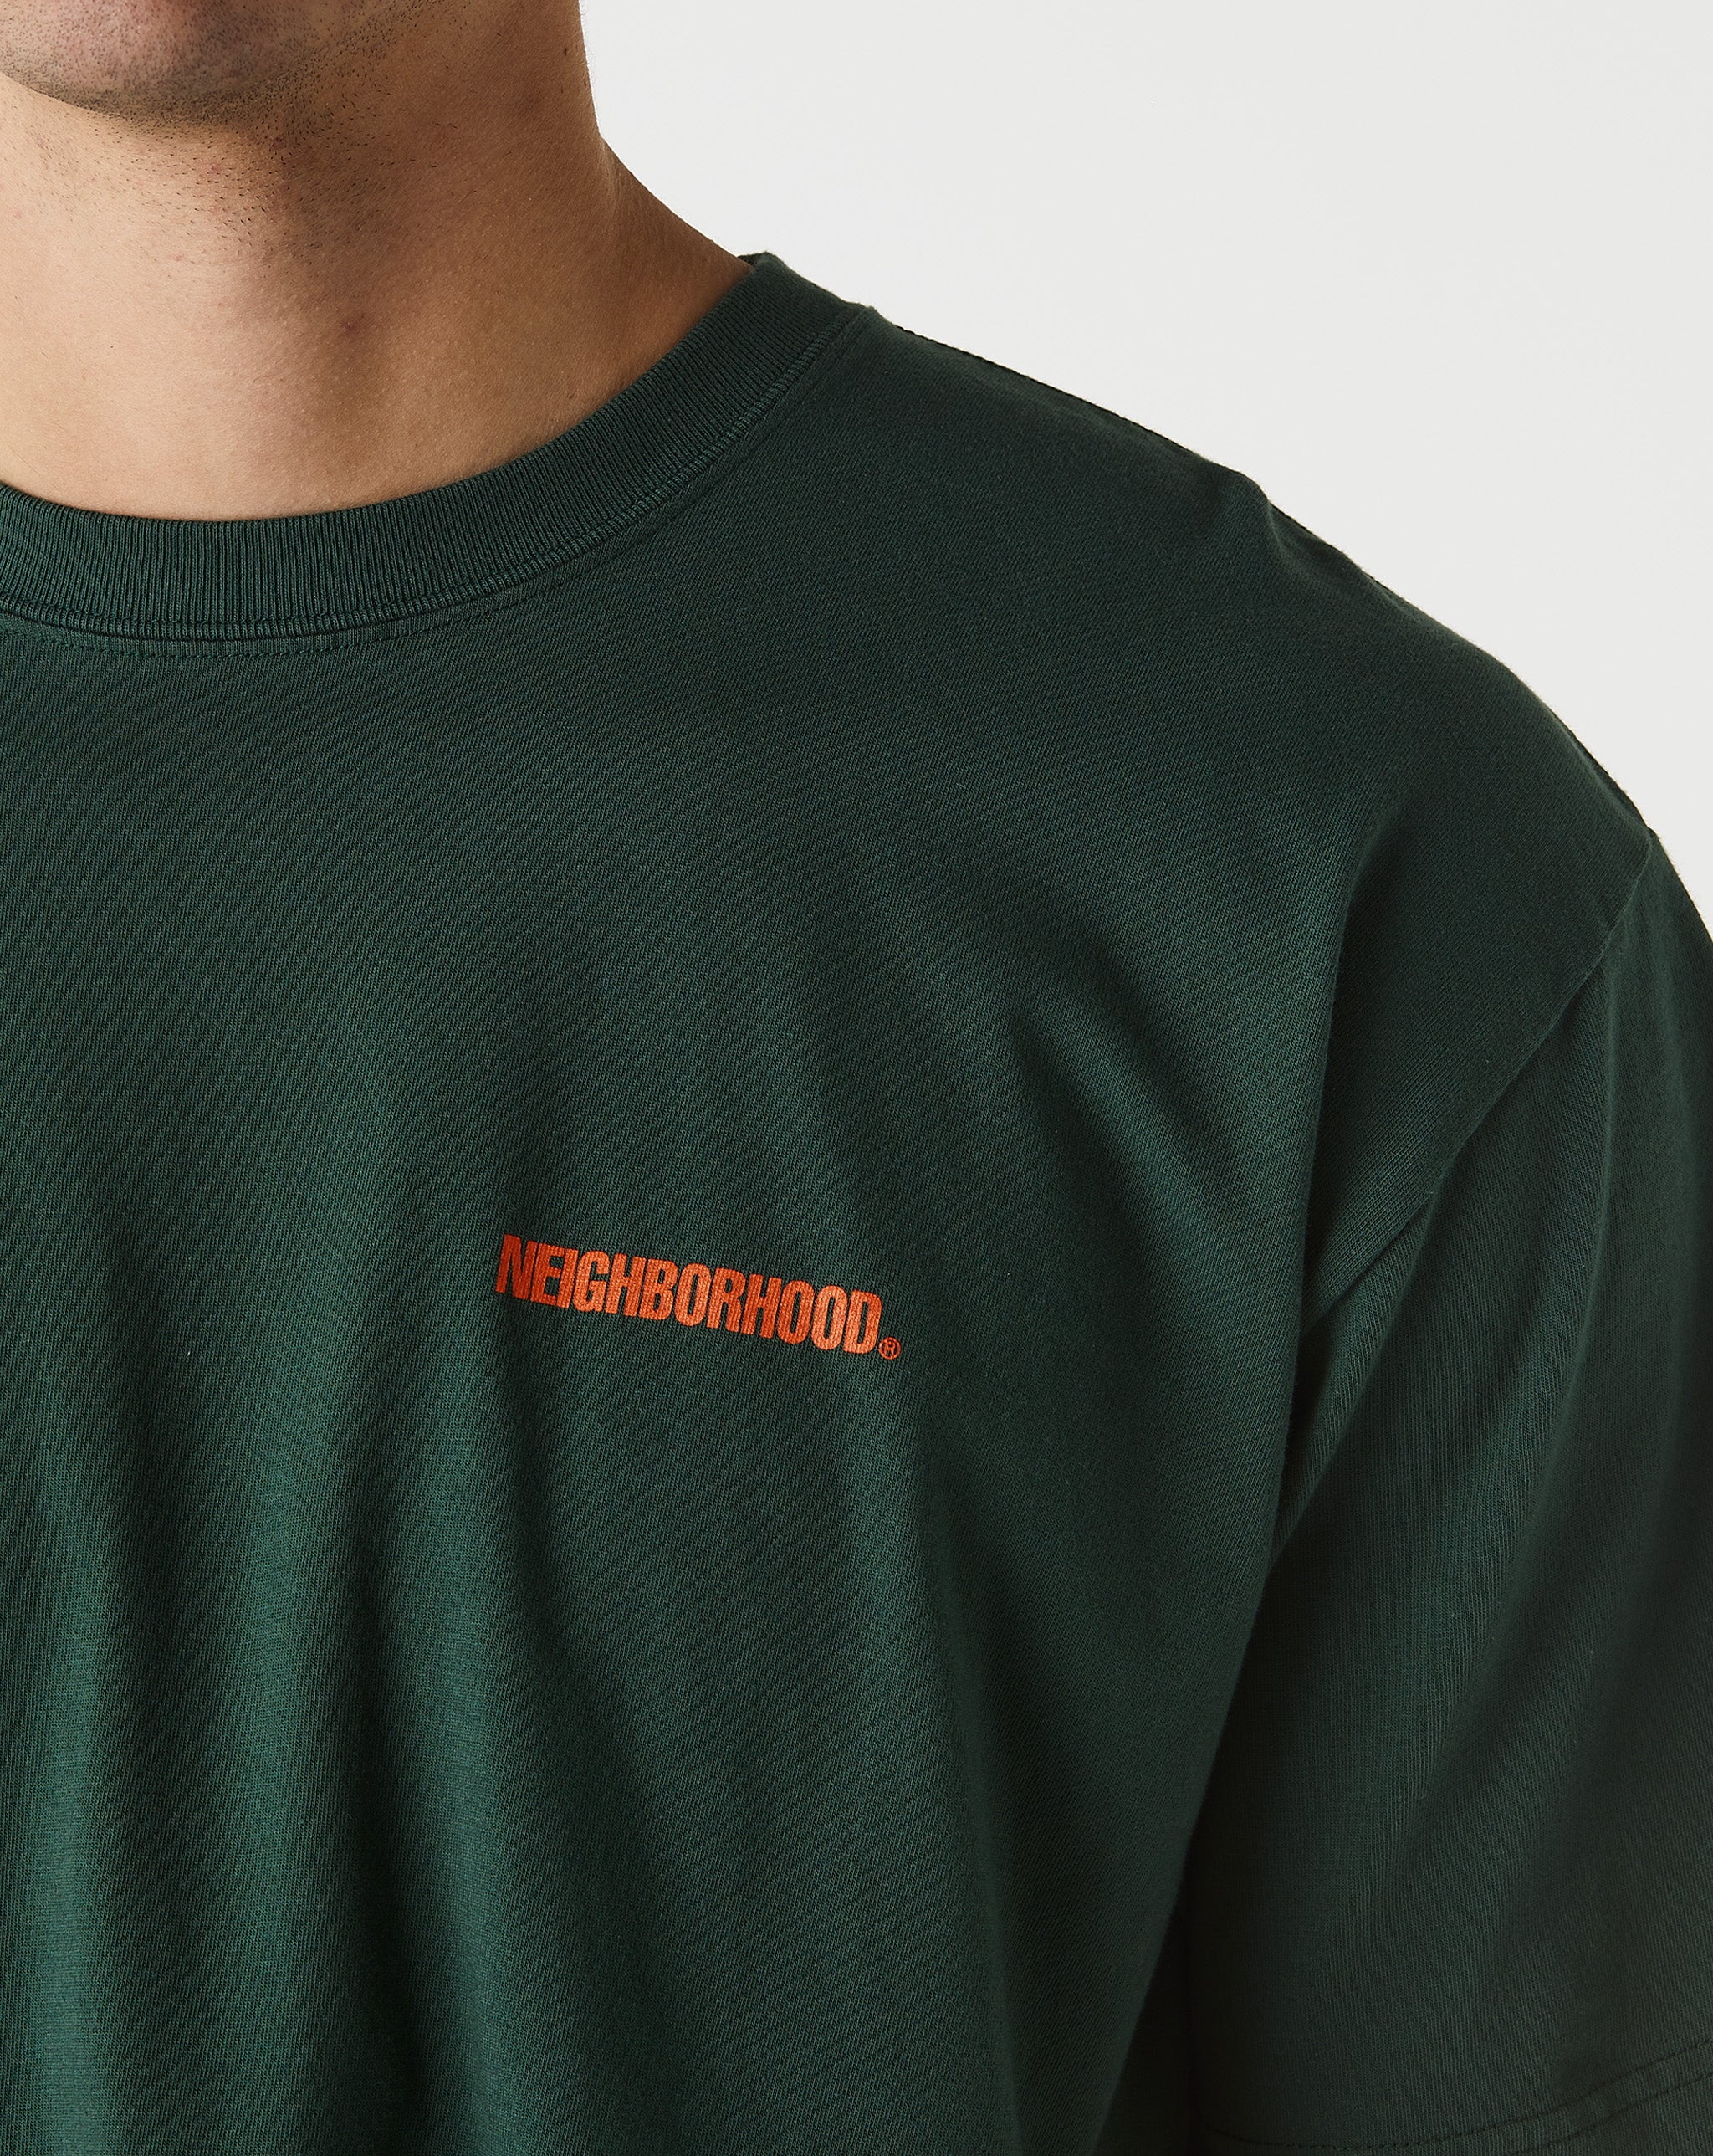 Neighborhood T-Shirt #4  - XHIBITION